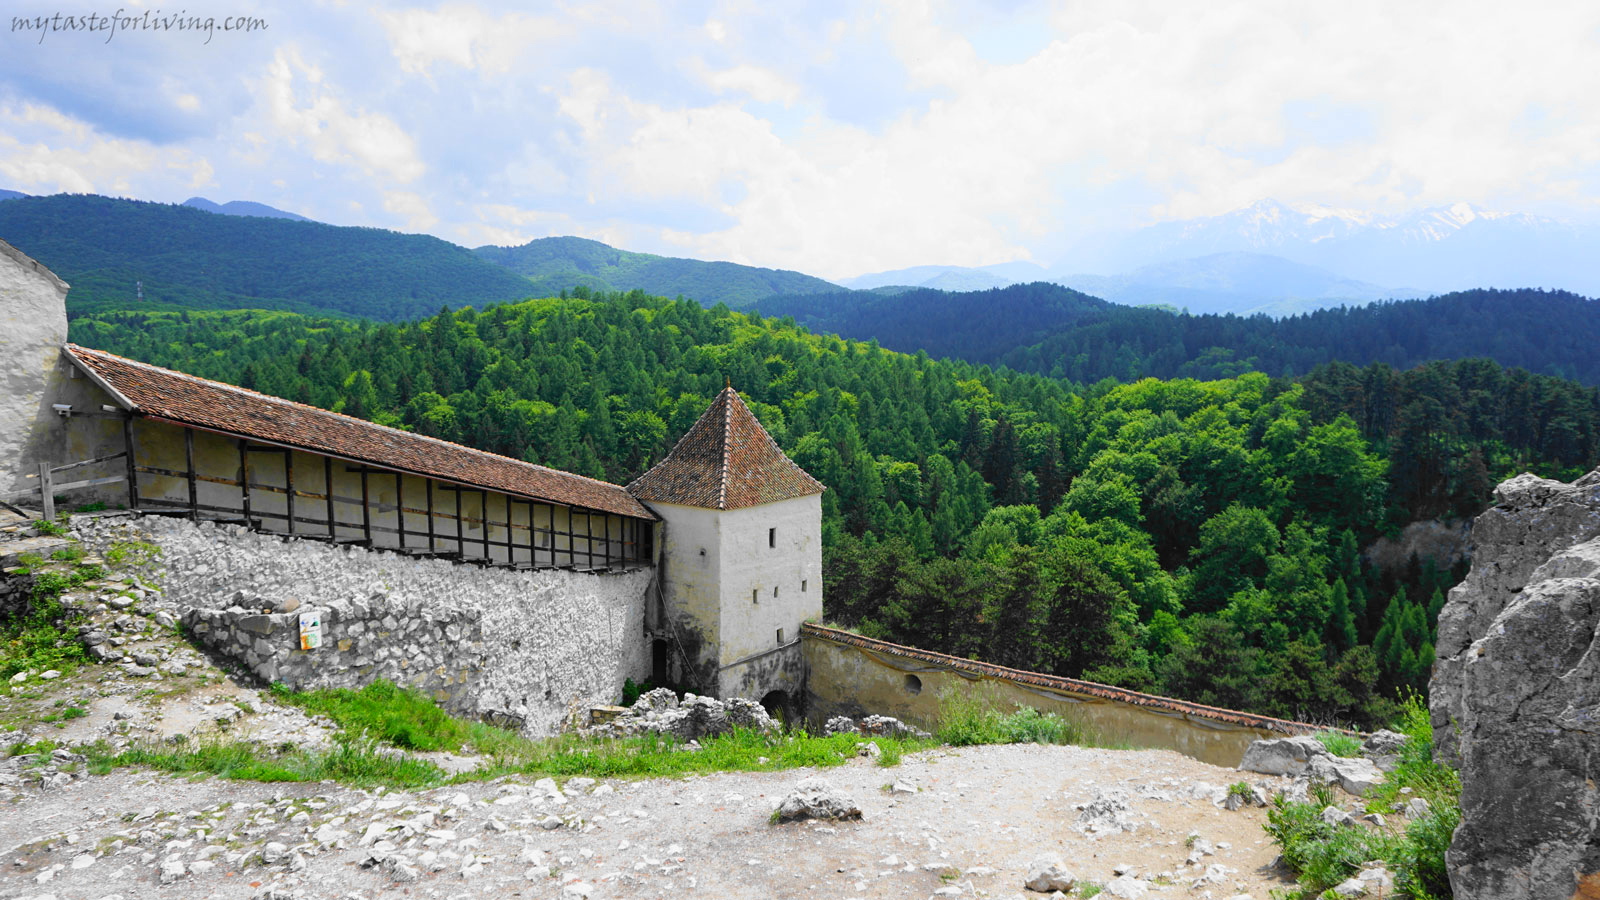 Разположенa близо до Брашов, на 200 метра над град Ръшнов, на върха на скалист хълм, крепостта Ръшнов е една от най-посещаваните средновековни забележителности в Румъния. 